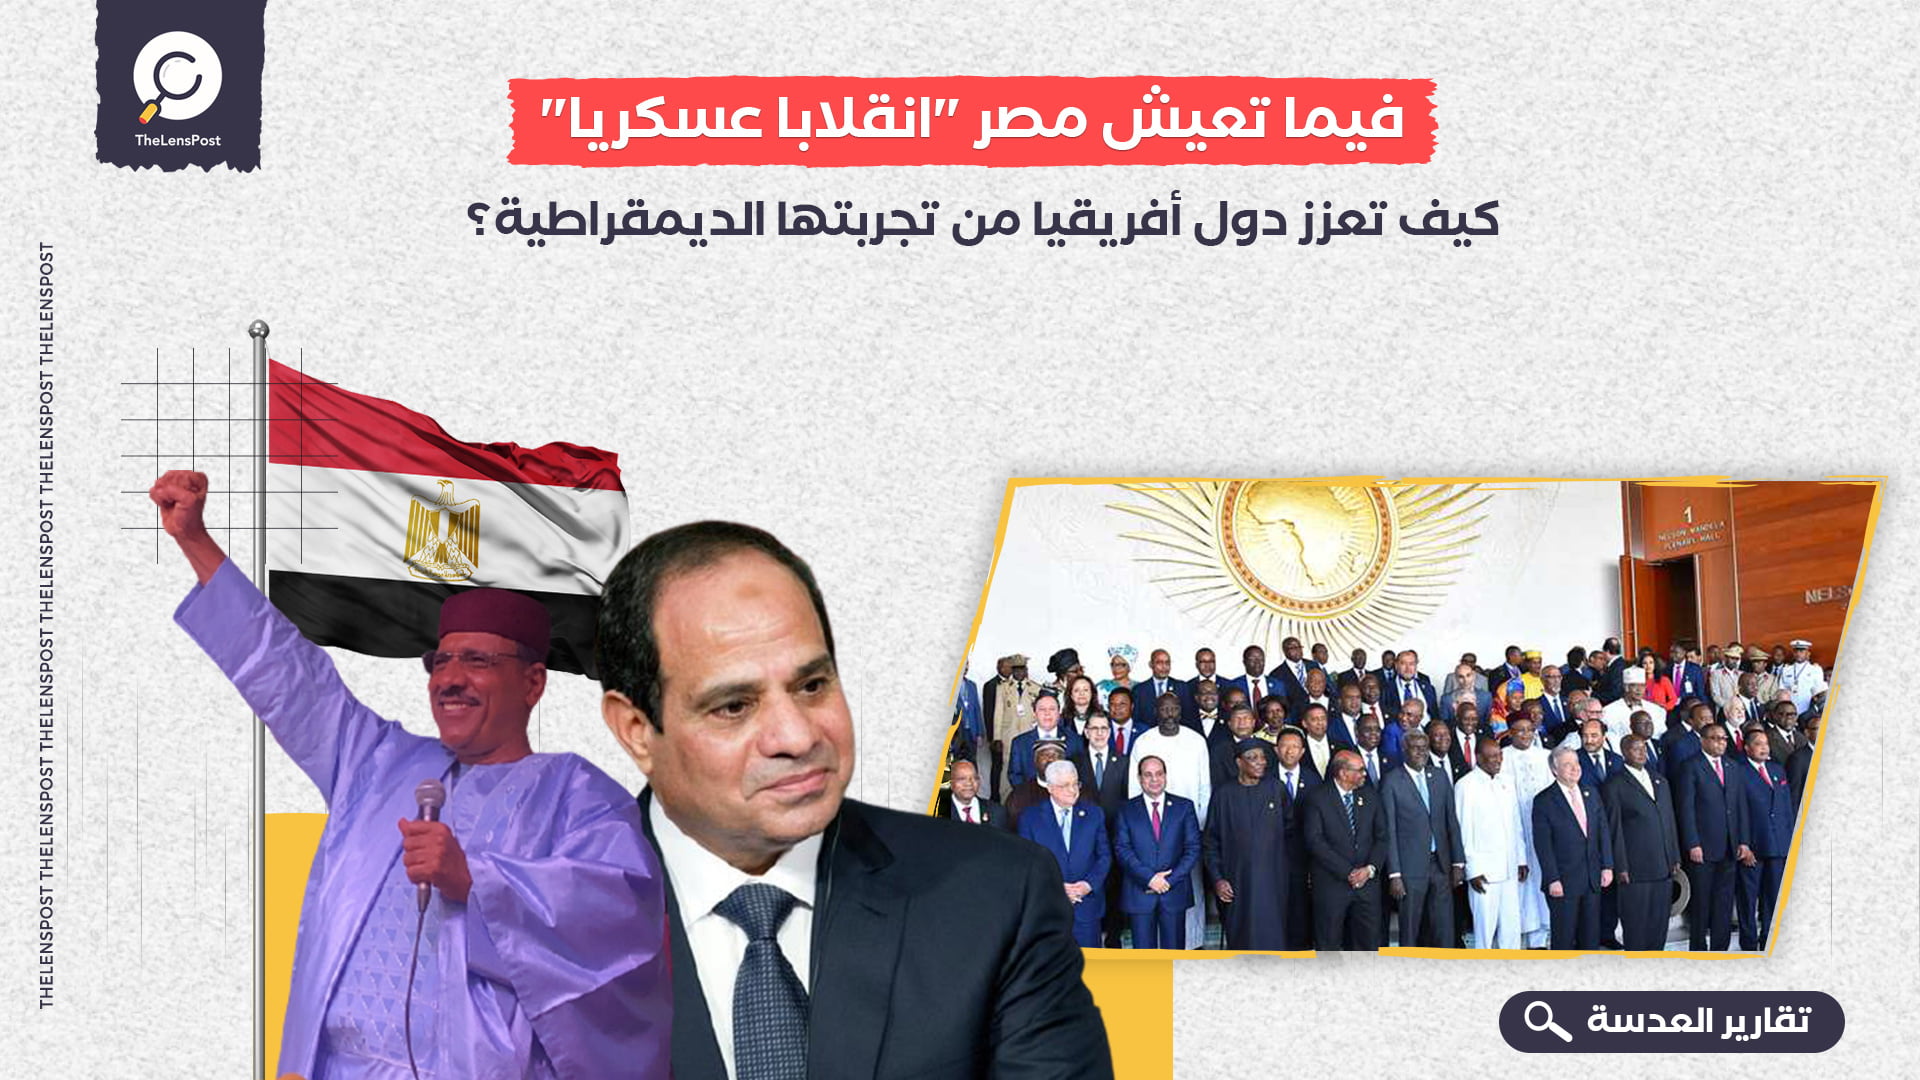 فيما تعيش مصر "انقلابا عسكريا".. كيف تعزز دول أفريقيا من تجربتها الديمقراطية؟